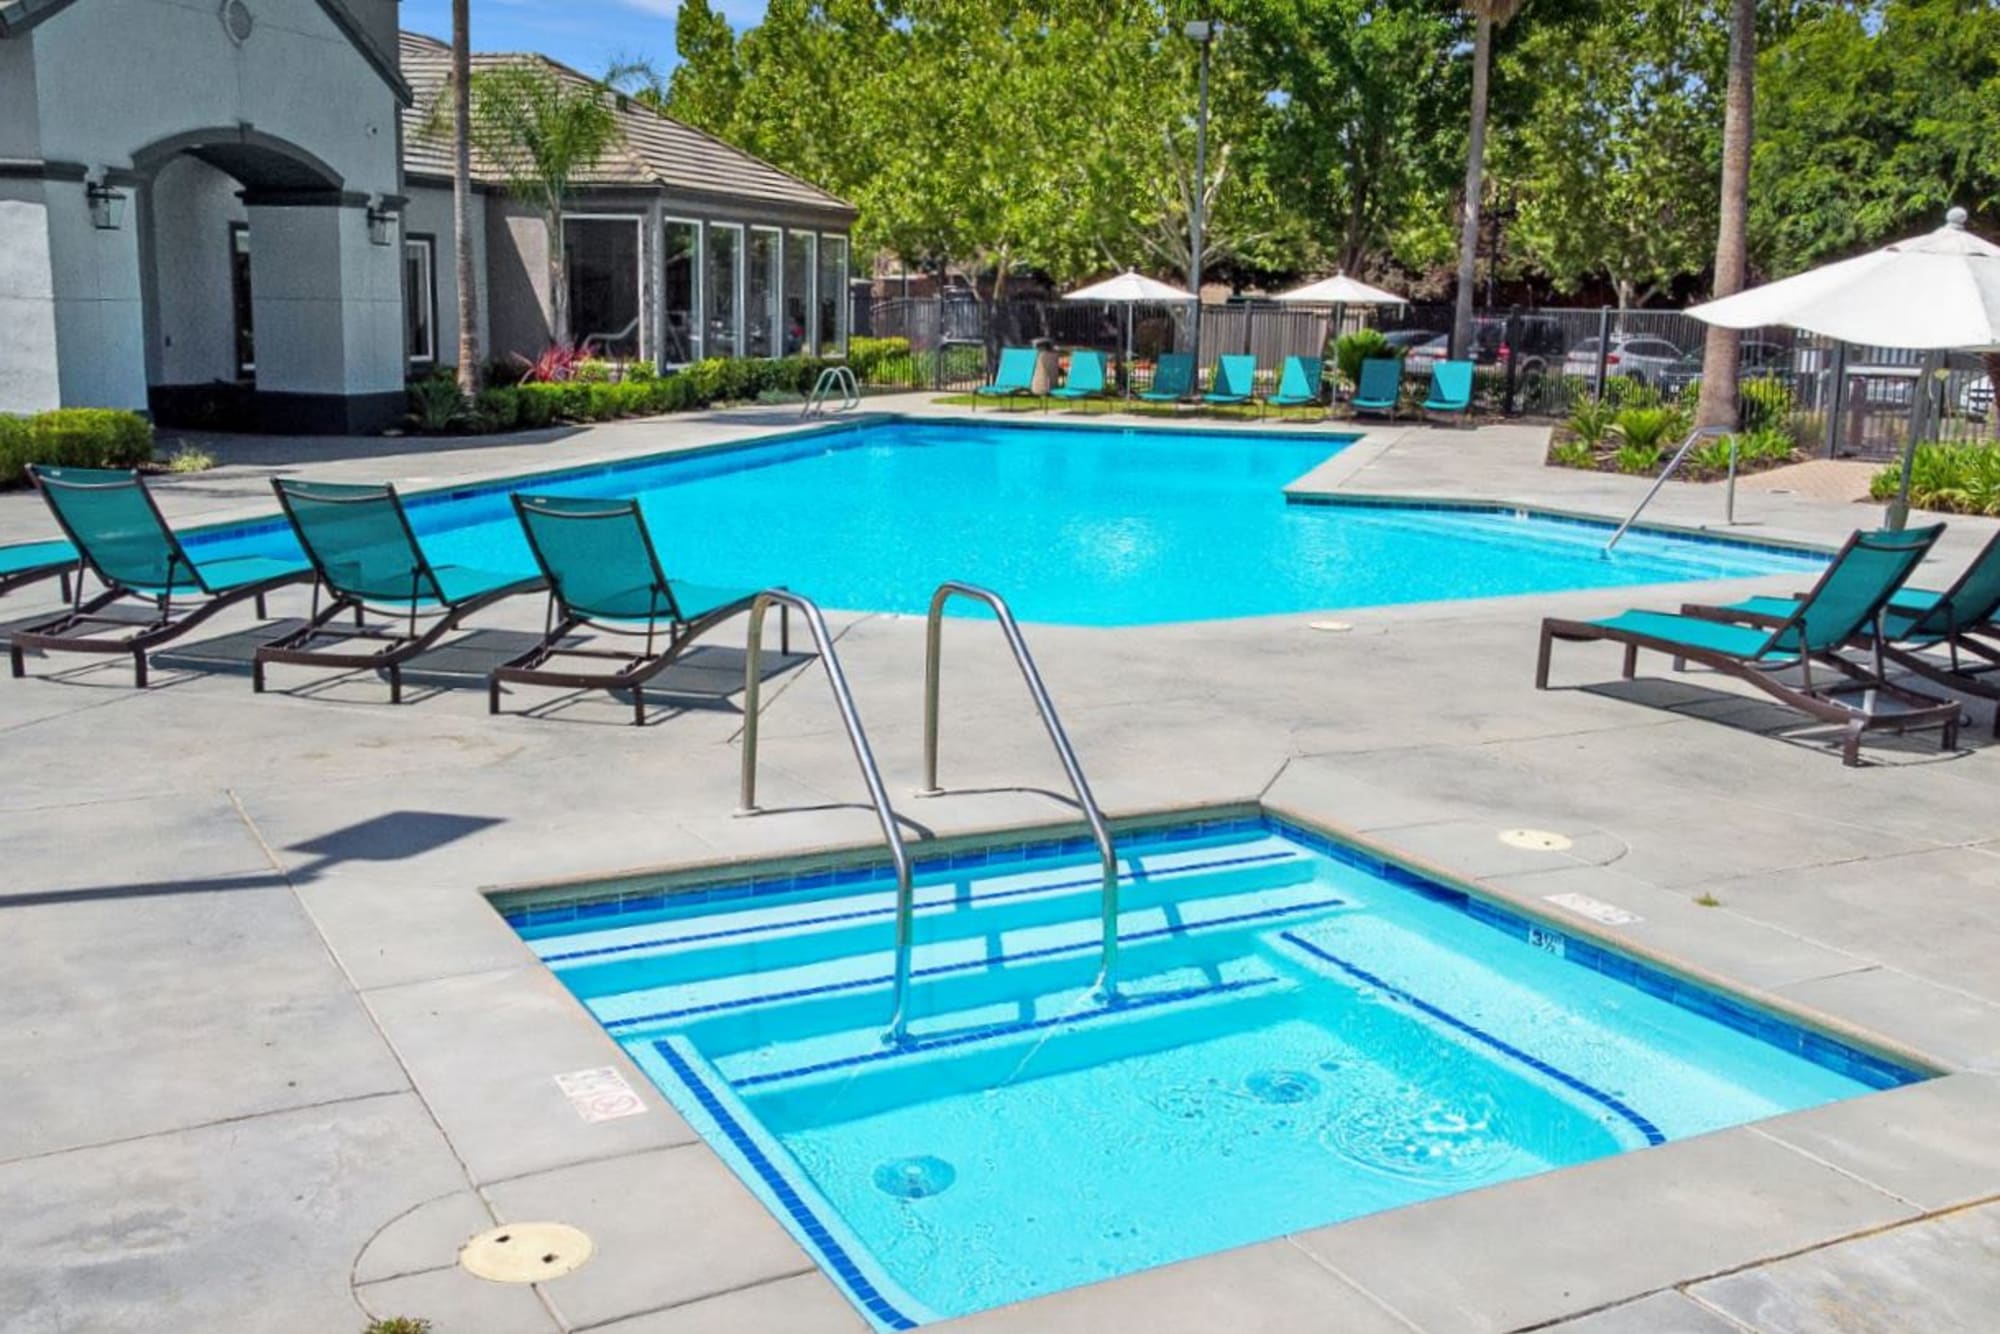 Hot tub and swimming pool at Avion Apartments in Rancho Cordova, California